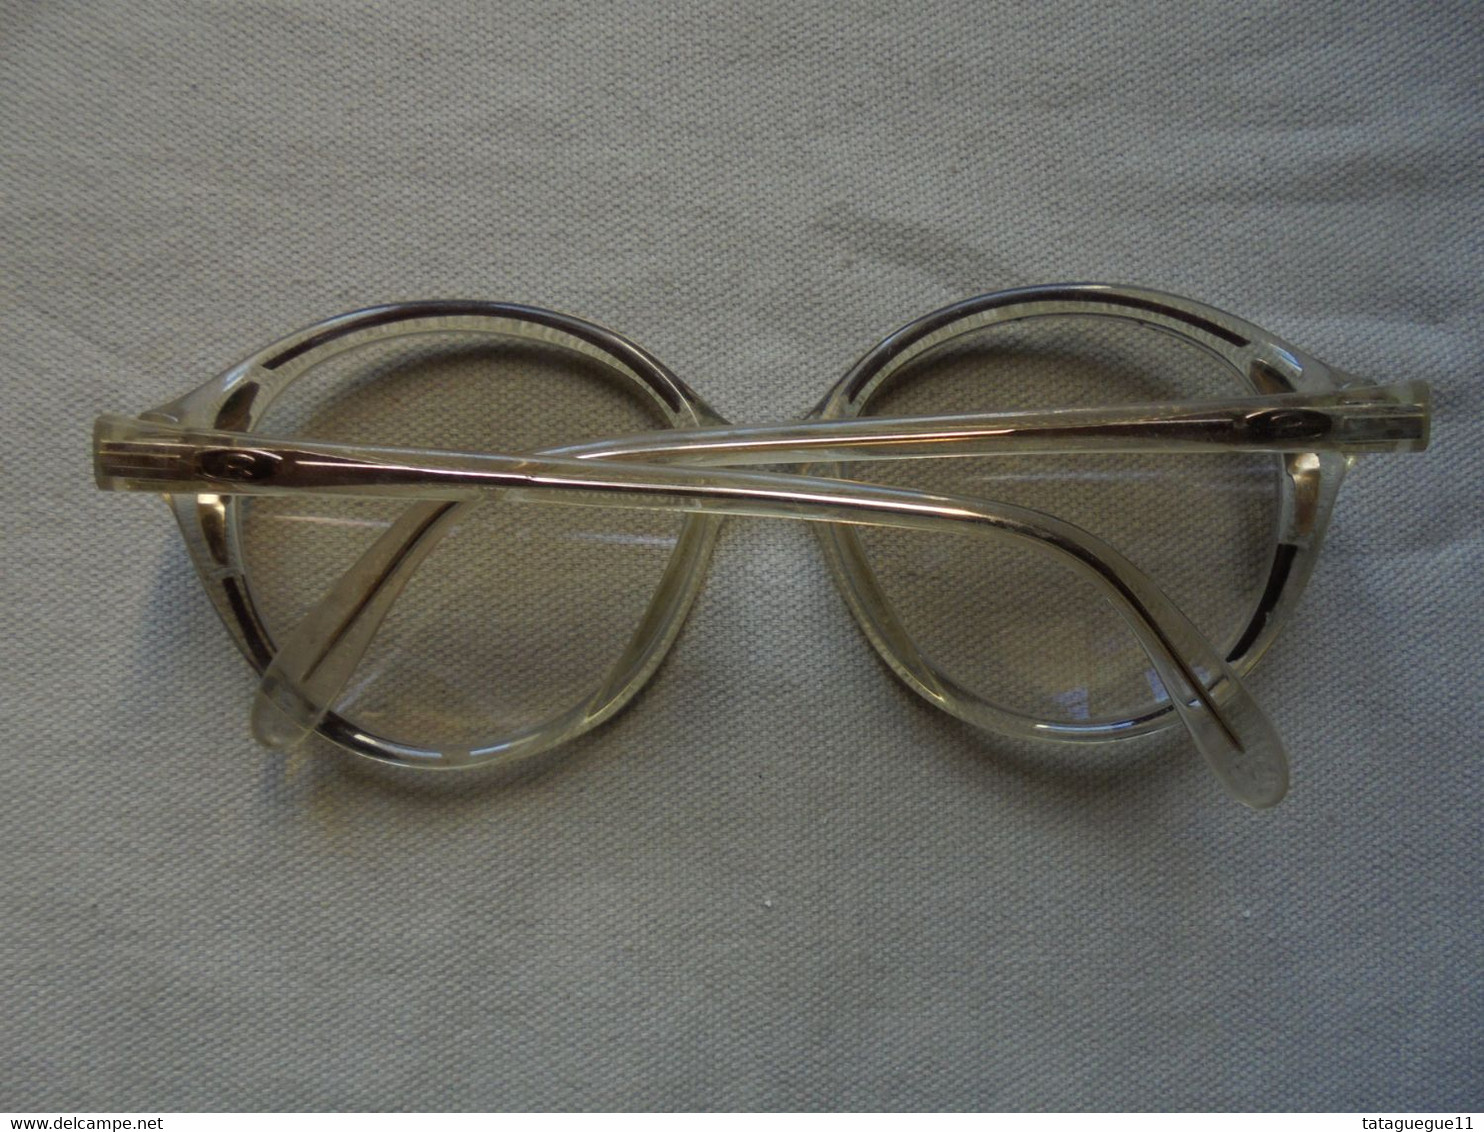 Vintage - Paire de lunettes de vue Rodenstock Lady R pour femme